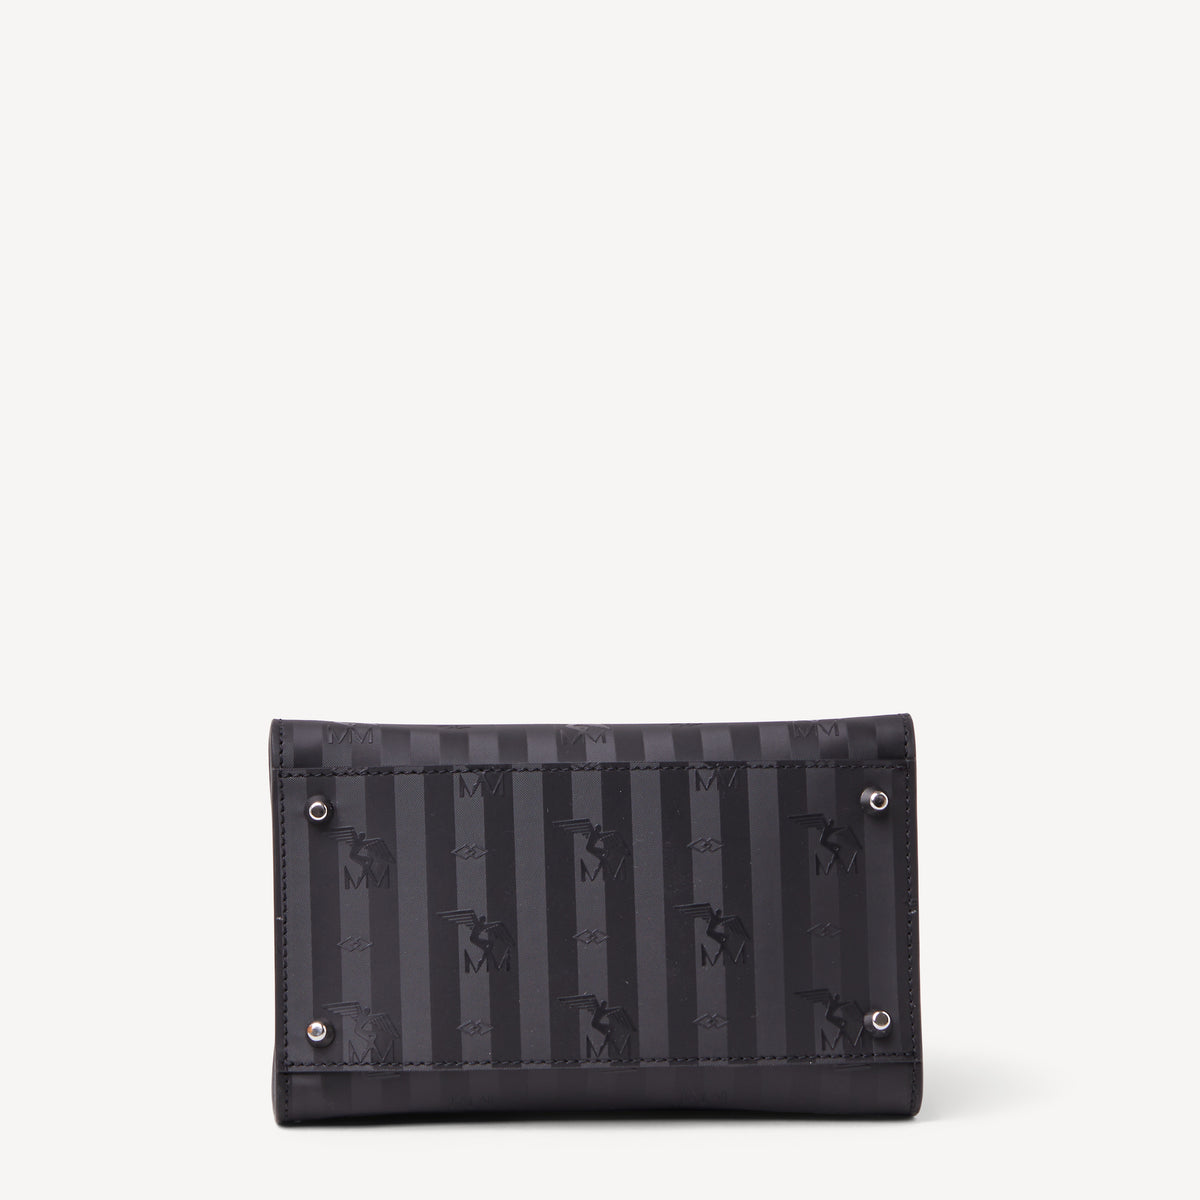 SOGLIO | Handtasche classic schwarz/silber- von unten